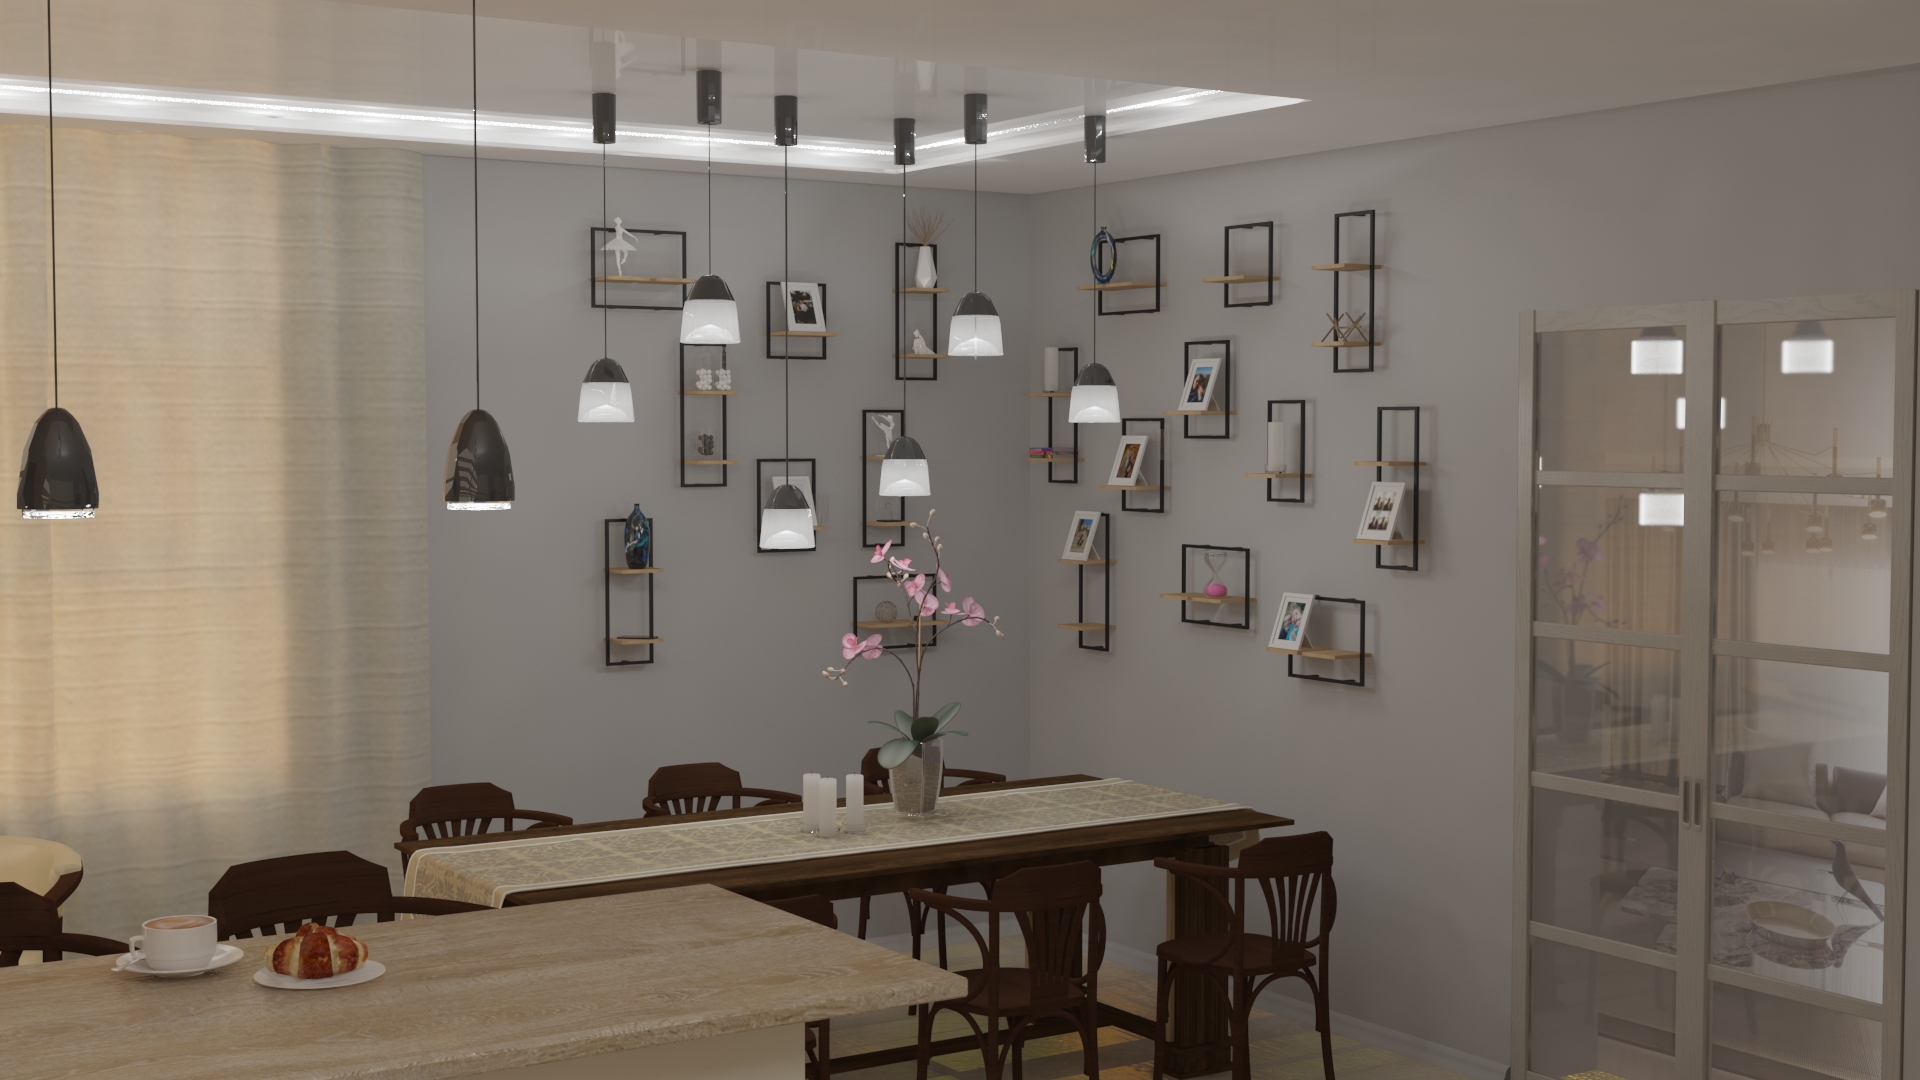 Cozinha-sala de jantar em 3d max vray 3.0 imagem